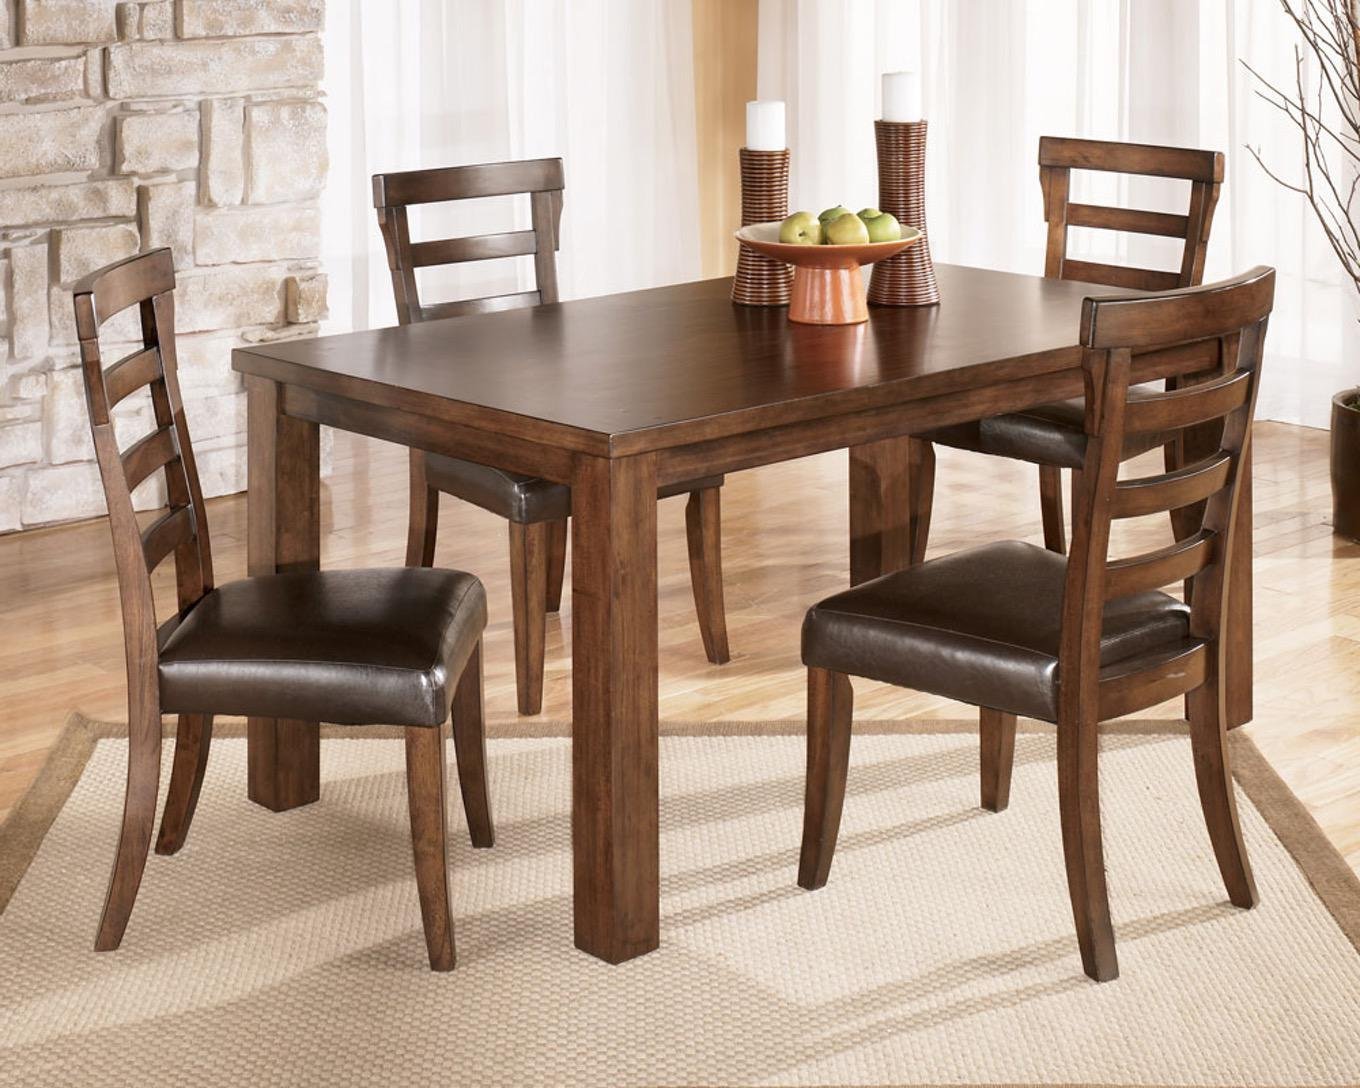 Картинка стол. Деревянные столы и стулья. Стол деревянный обеденный. Деревянные столы и стулья для кухни. Кухонный стол и стулья дерево.